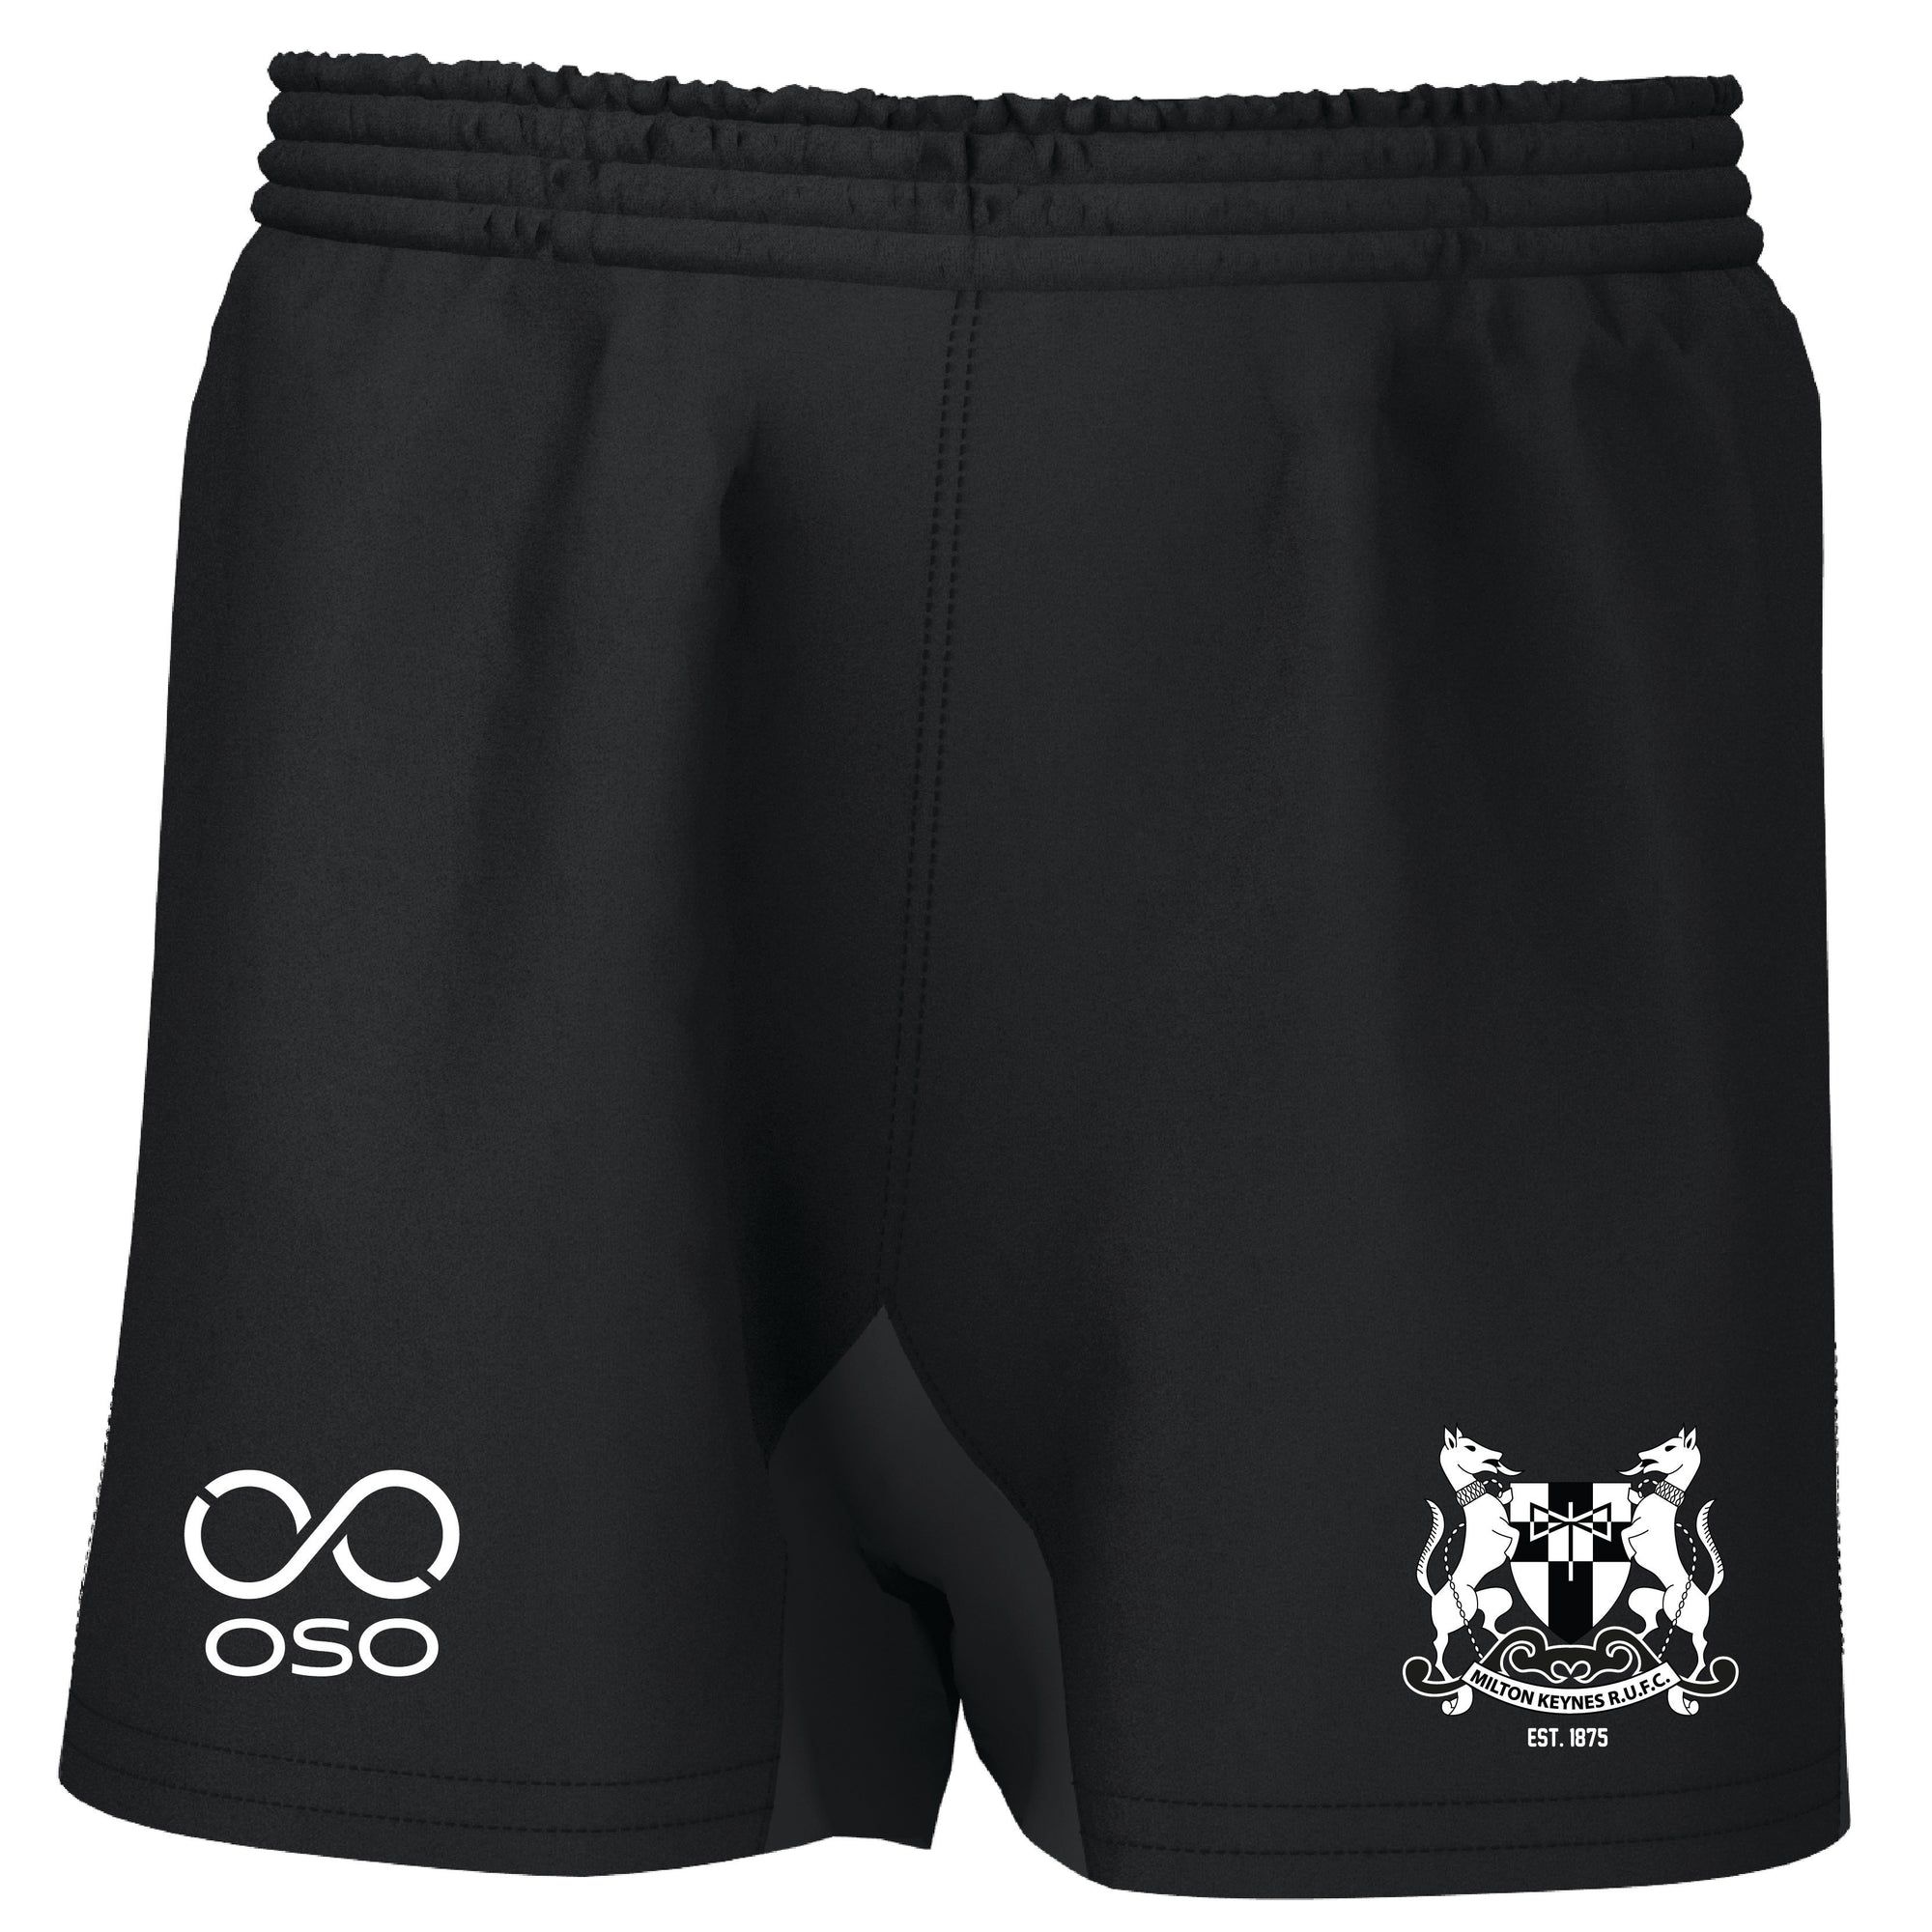 MKRUFC Pro Rugby Shorts - Black